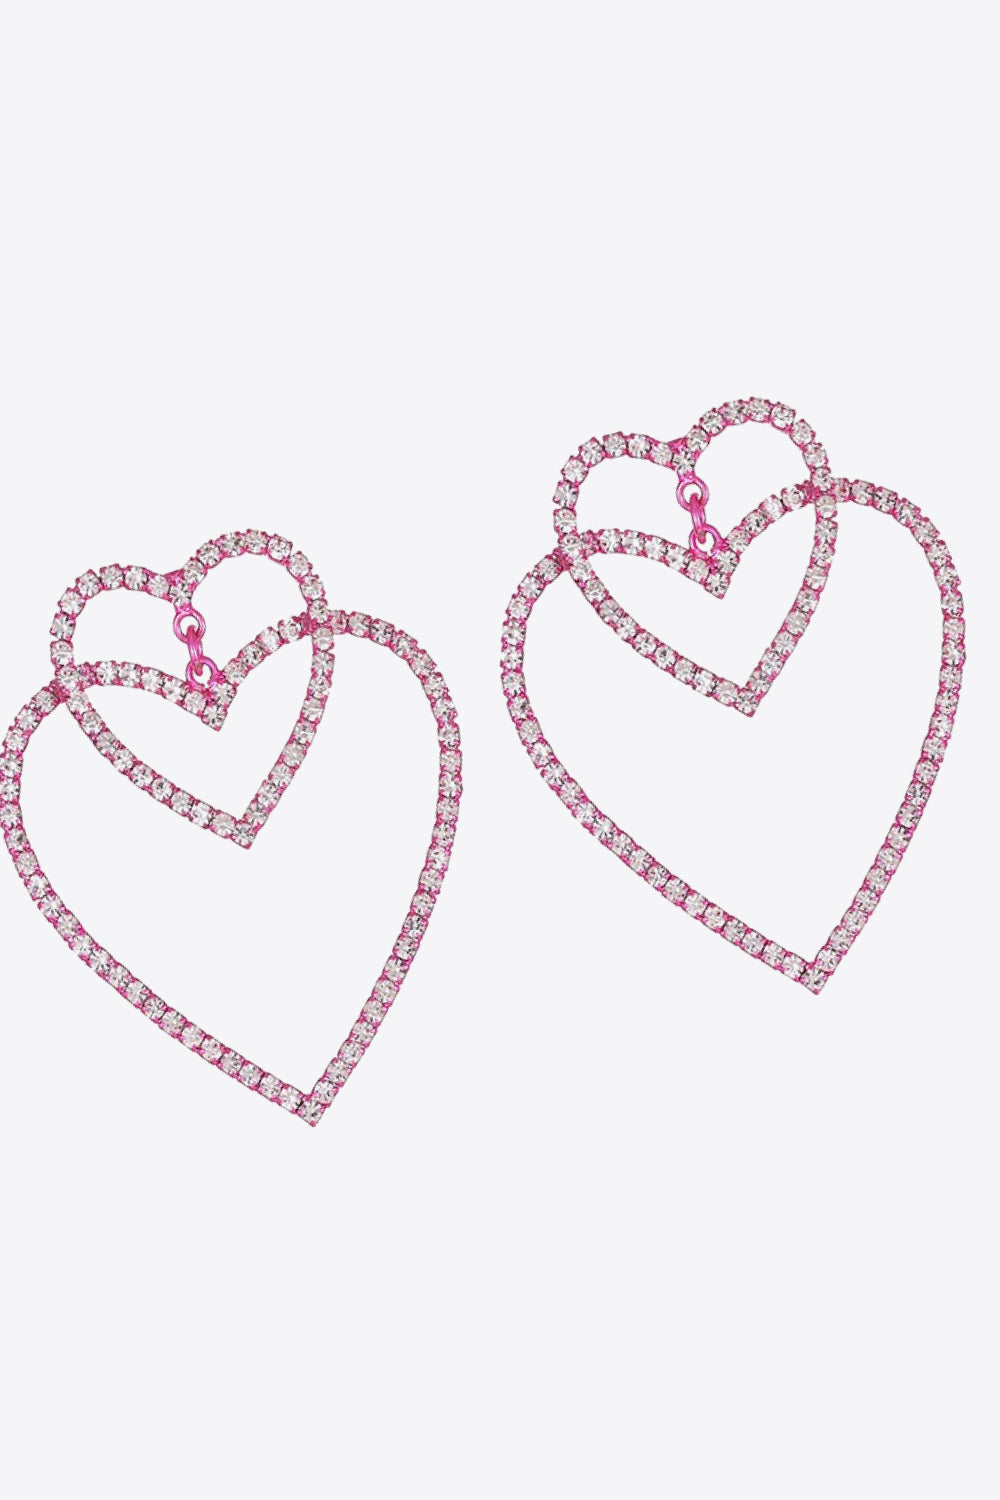 Valentine Barbie Heart Earrings